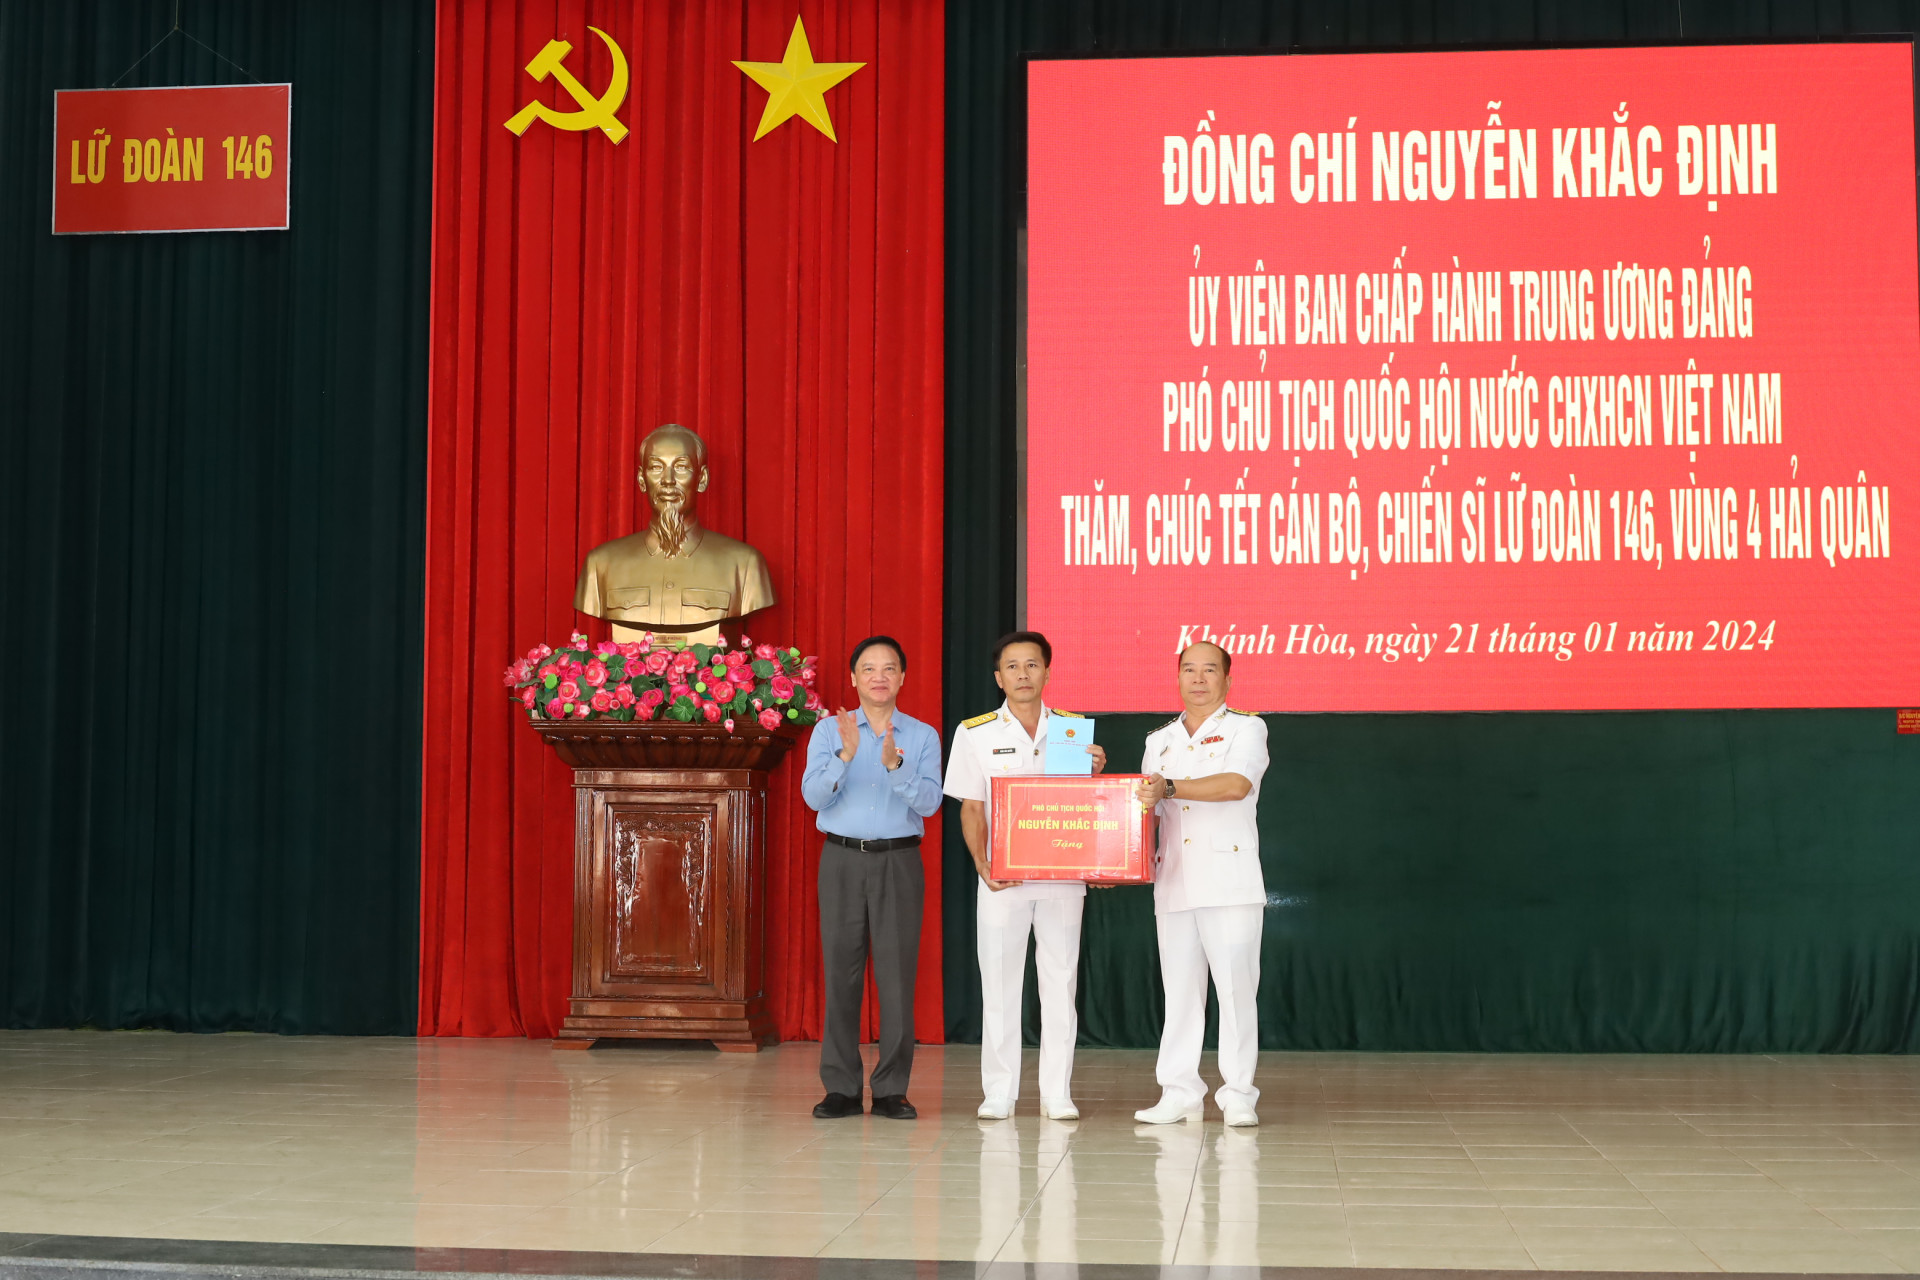 Đồng chí Nguyễn Khắc Định tặng quà cán bộ, chiến sĩ Lữ đoàn 146 nhân dịp Tết cổ truyền của dân tộc.